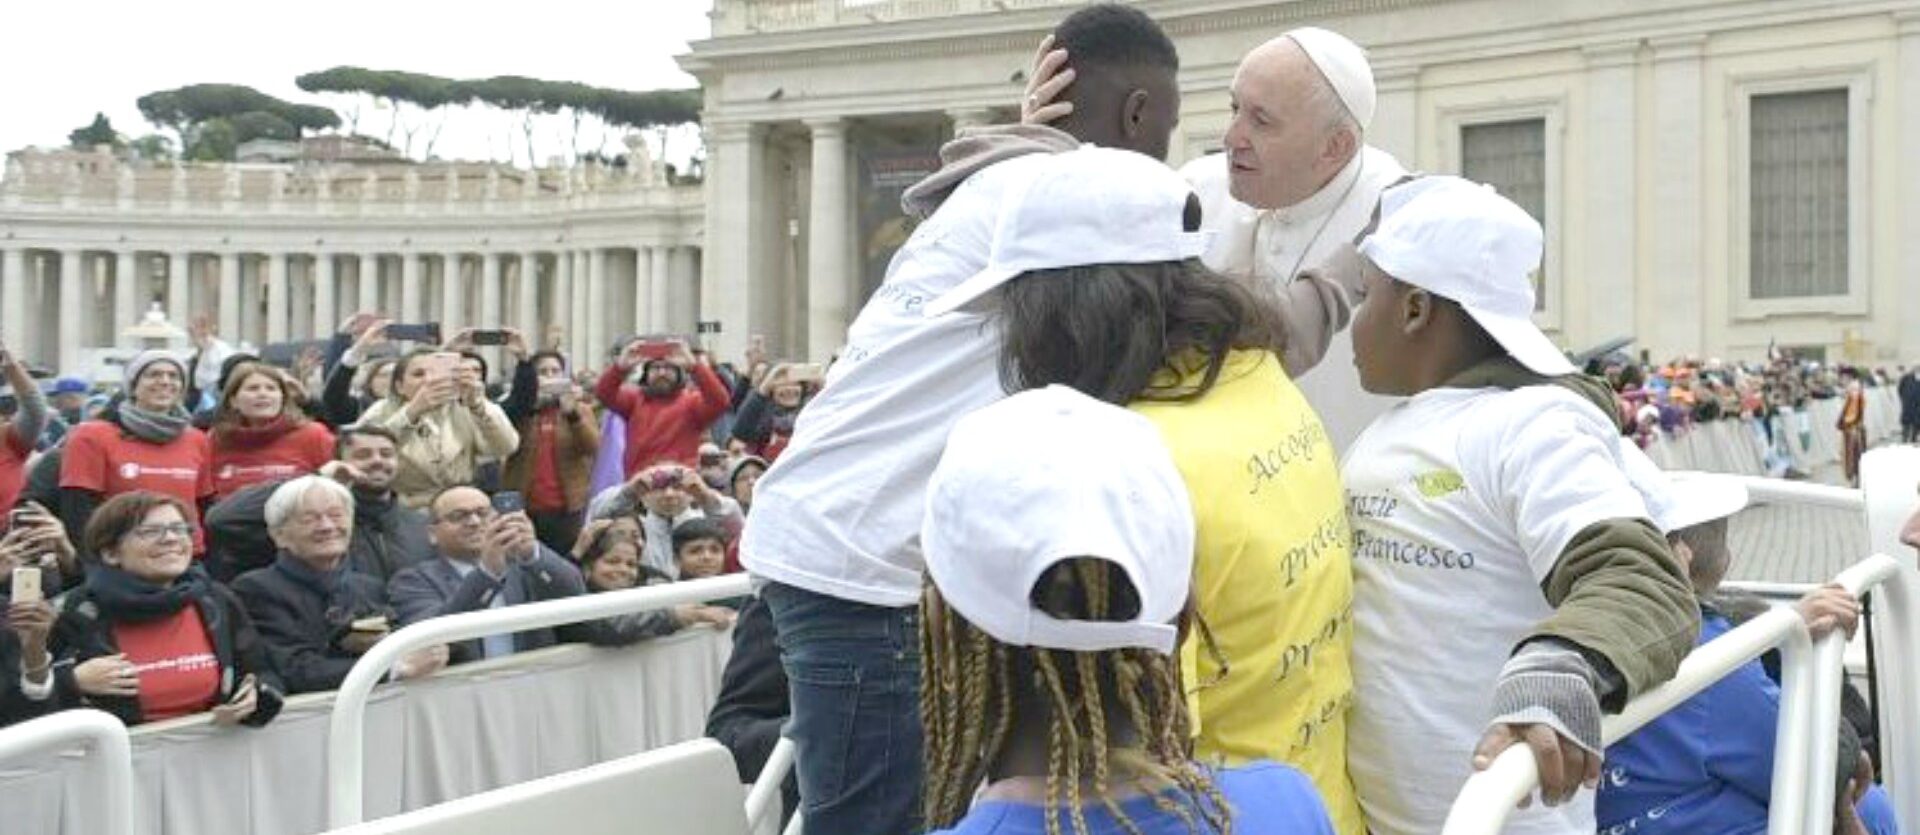 Le pape François sur la place Saint-Pierre avec des enfants réfugiés | © Vatican Media